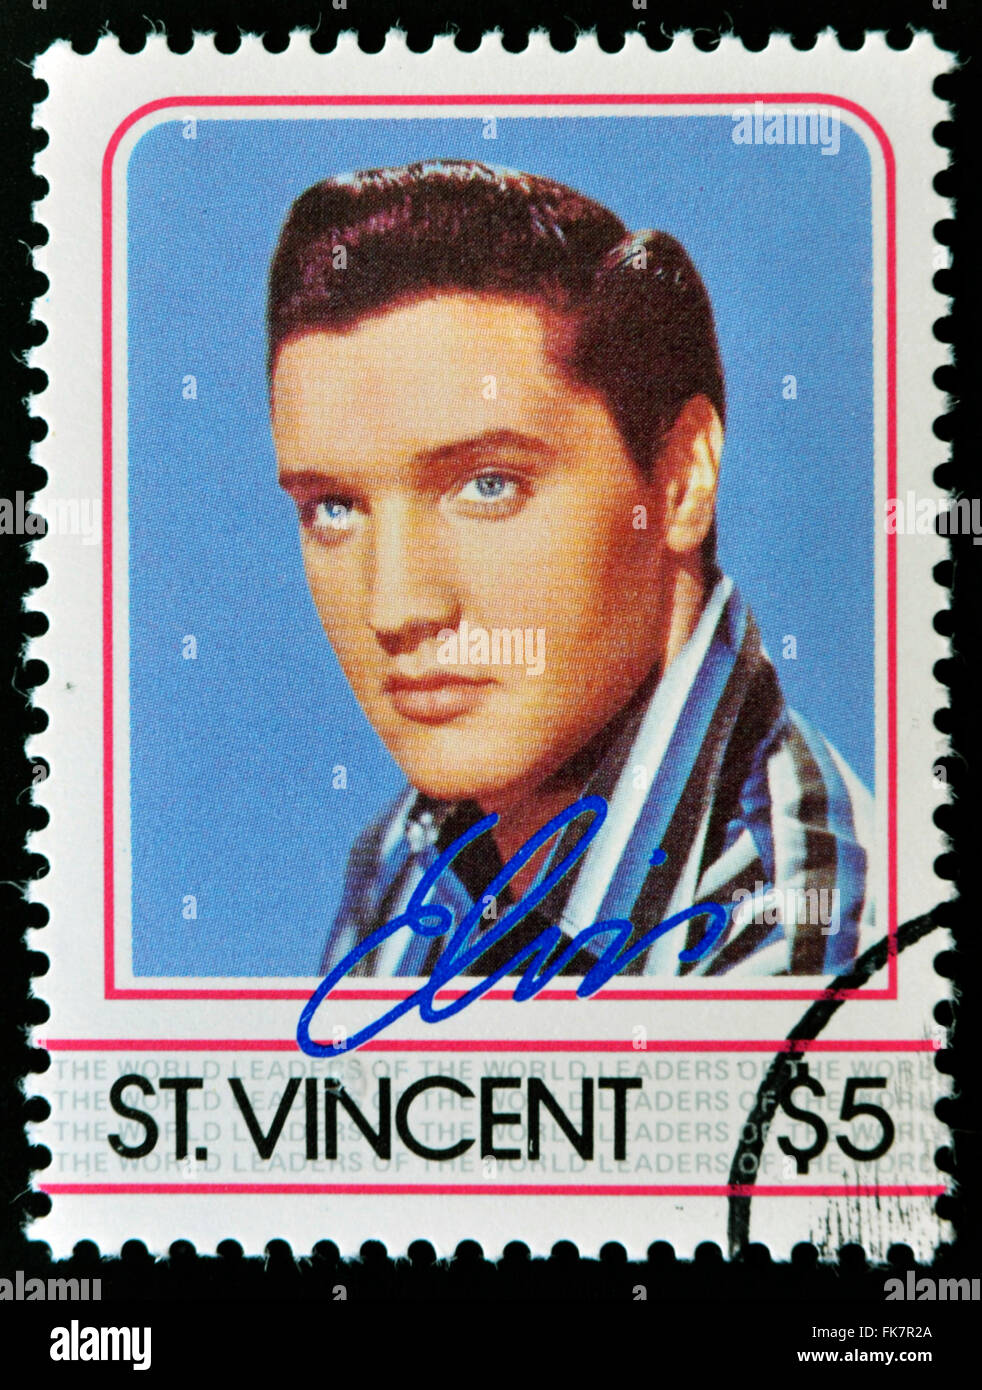 ST. VINCENT - circa 1985 : timbre imprimé en Saint Vincent, présente Elvis Presley, circa 1985. Banque D'Images